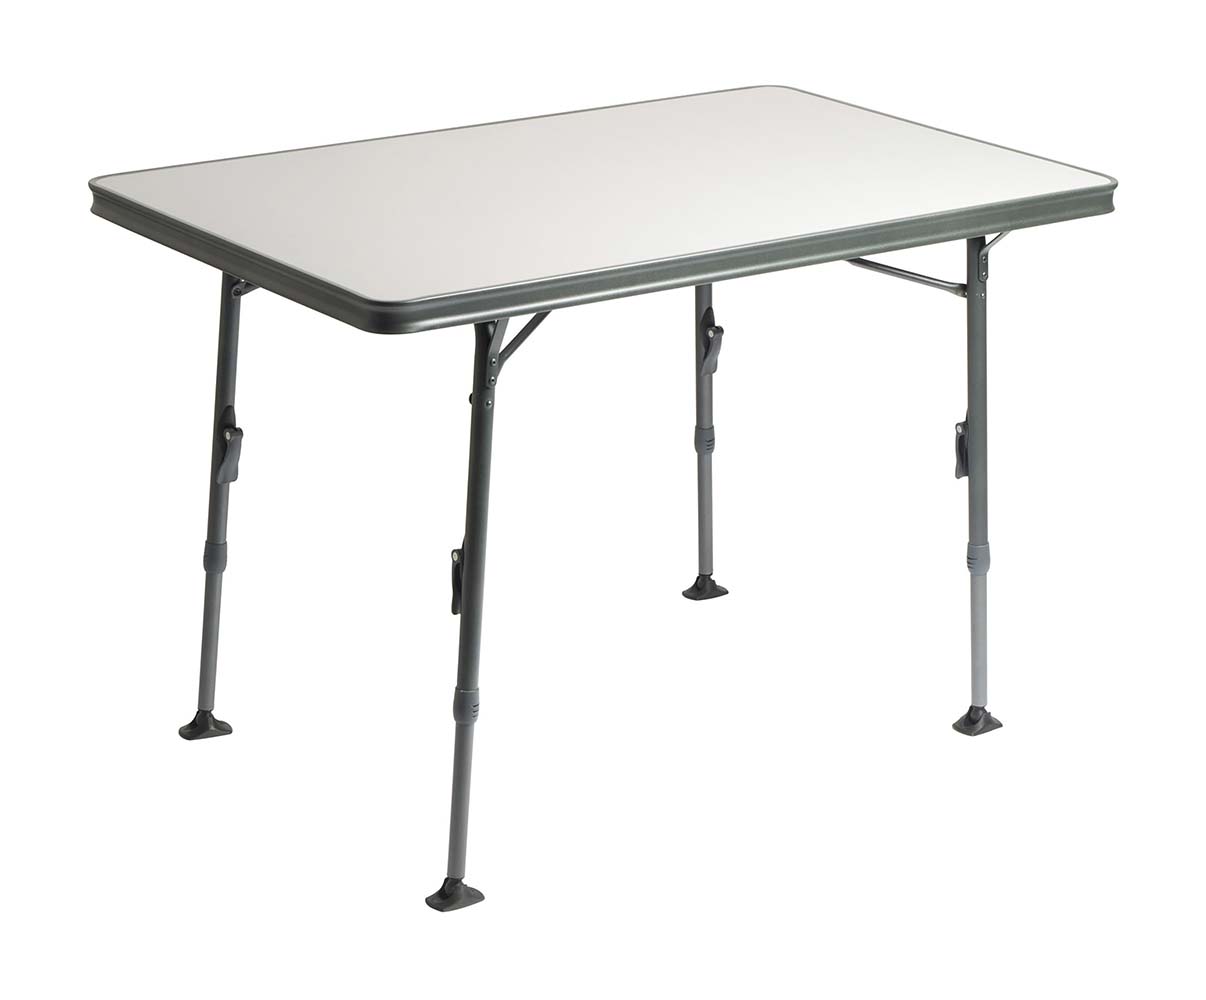 1151380 Ein luxuriöser und stilvoller Tisch. Dieser leichtgewichtige Campingtisch ist mit einer hitzebeständigen und wasserfesten Tischplatte versehen und verfügt über eine extra verstärkte Aluminiumkonstruktion. Die Verarbeitung der Füße und der Tischränder gewährleisten eine stilvolle und hochwertige Ausstrahlung.  Der Tisch verfügt über stufenlos verstellbare Tischbeine, die eingeklappt werden können. Somit lässt er sich einfach transportieren und kompakt verstauen. Dank der Stabilisierungsfüße steht dieser Tisch auf jedem Untergrund stabil. Maximale Traglast: 50 kg.